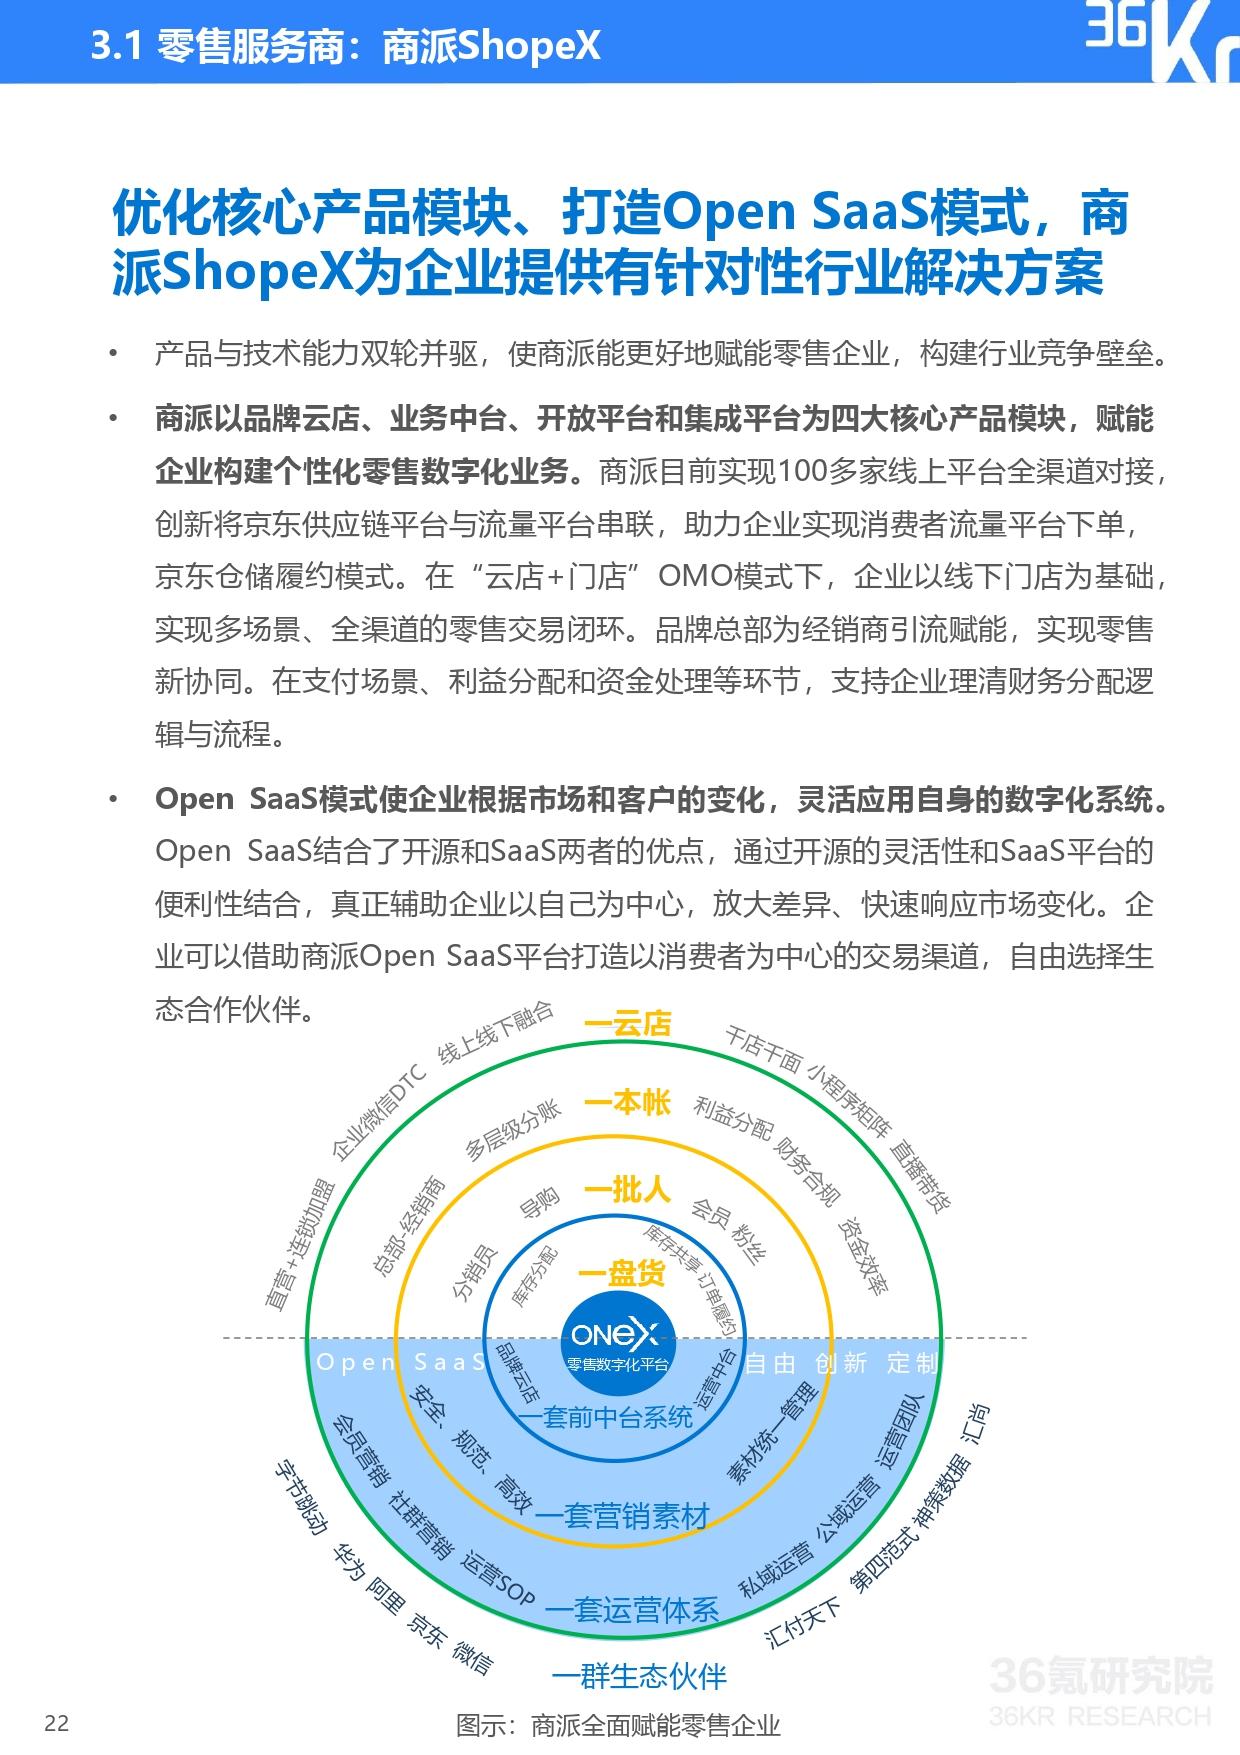 36氪研究院 | 2021年中国零售OMO研究报告